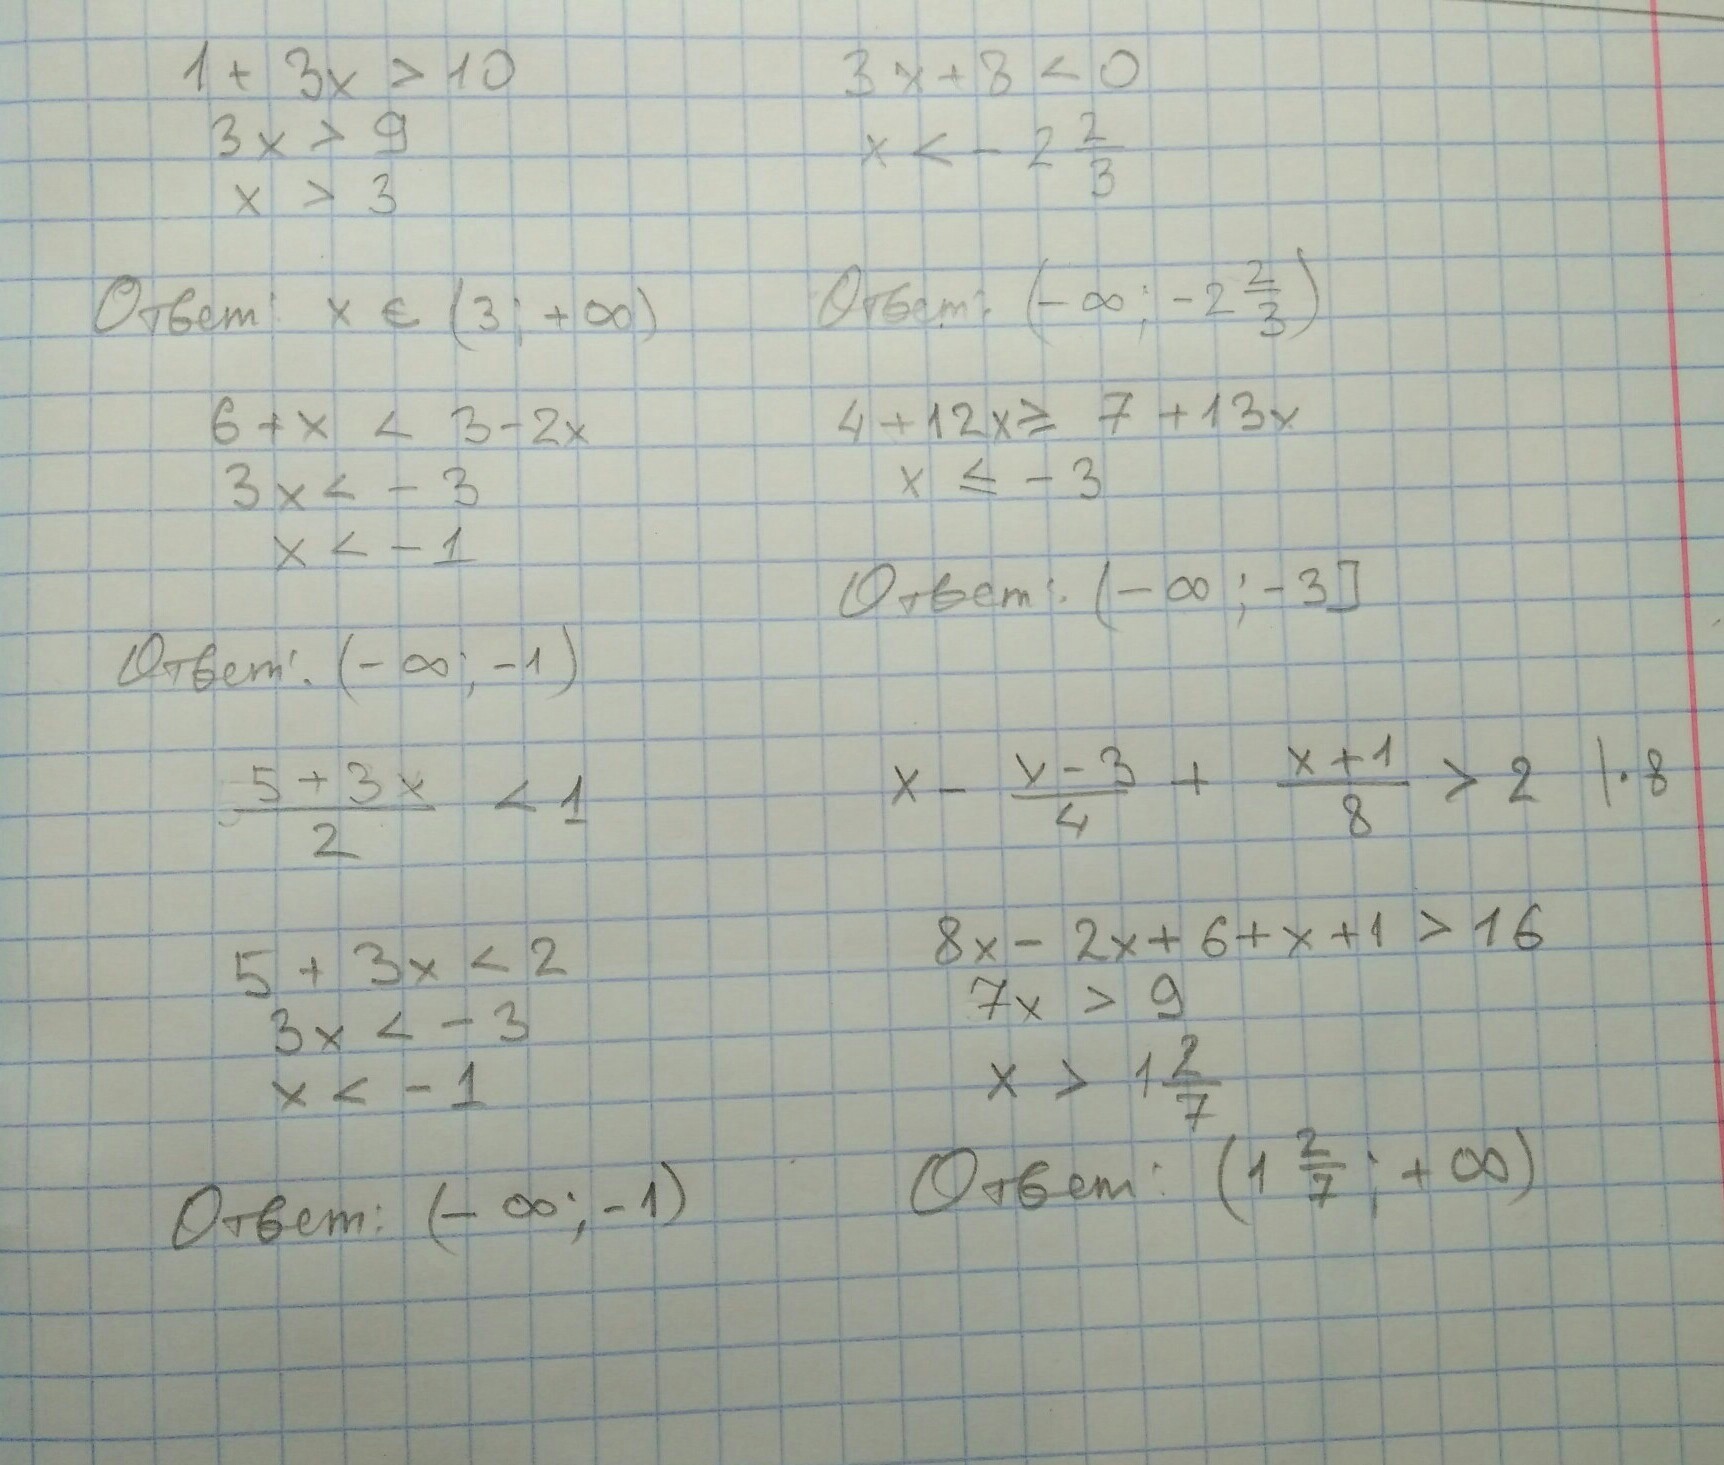 3x 5 x 1 10x 9. Решите неравенство .-4/(2х+8). 1/(X-2)(X-3) больше 0. 3x+2/x-4 меньше 0. Решение неравенства x2-3x-4 меньше или равно нулю.